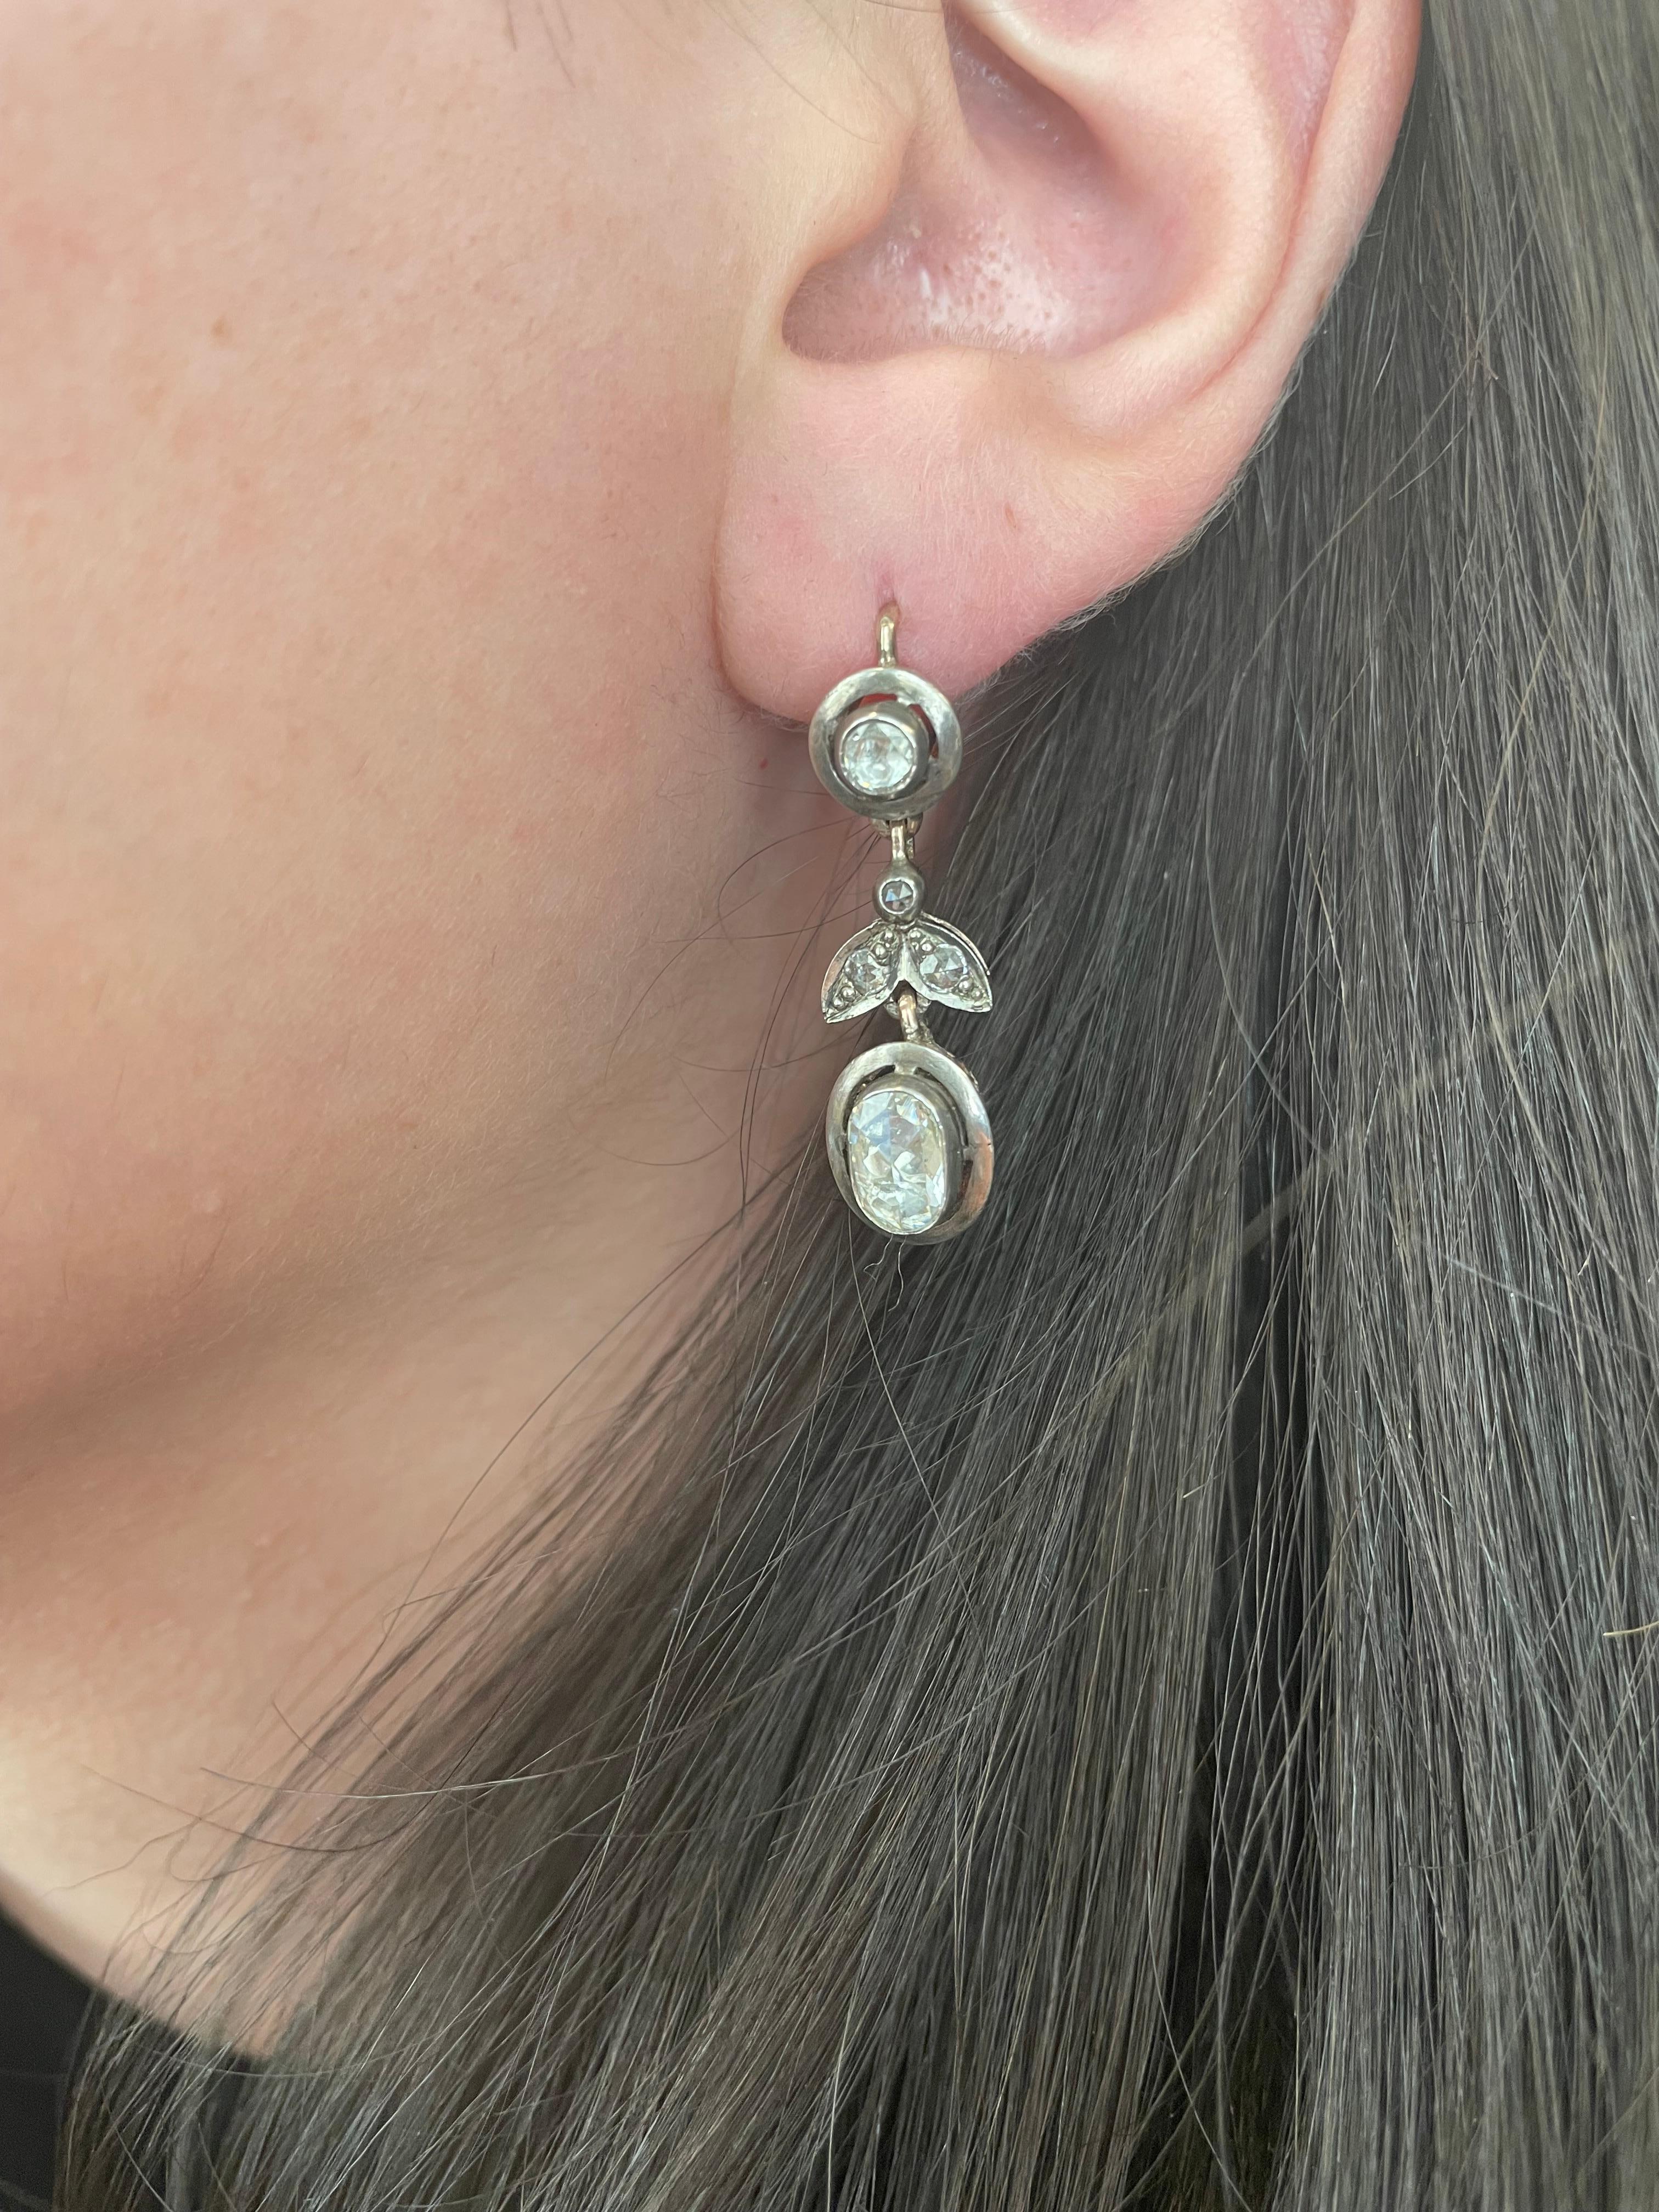 Auffällige, viktorianisch inspirierte Kronleuchter-Ohrringe.
Ungefähr 4 Karat ovale und runde Diamanten im Rosenschliff, Farbe H/I und Reinheit SI. Gold und Silber.
Untergebracht mit einer aktuellen Schätzung von einem GIA G.G. auf Anfrage. Bitte